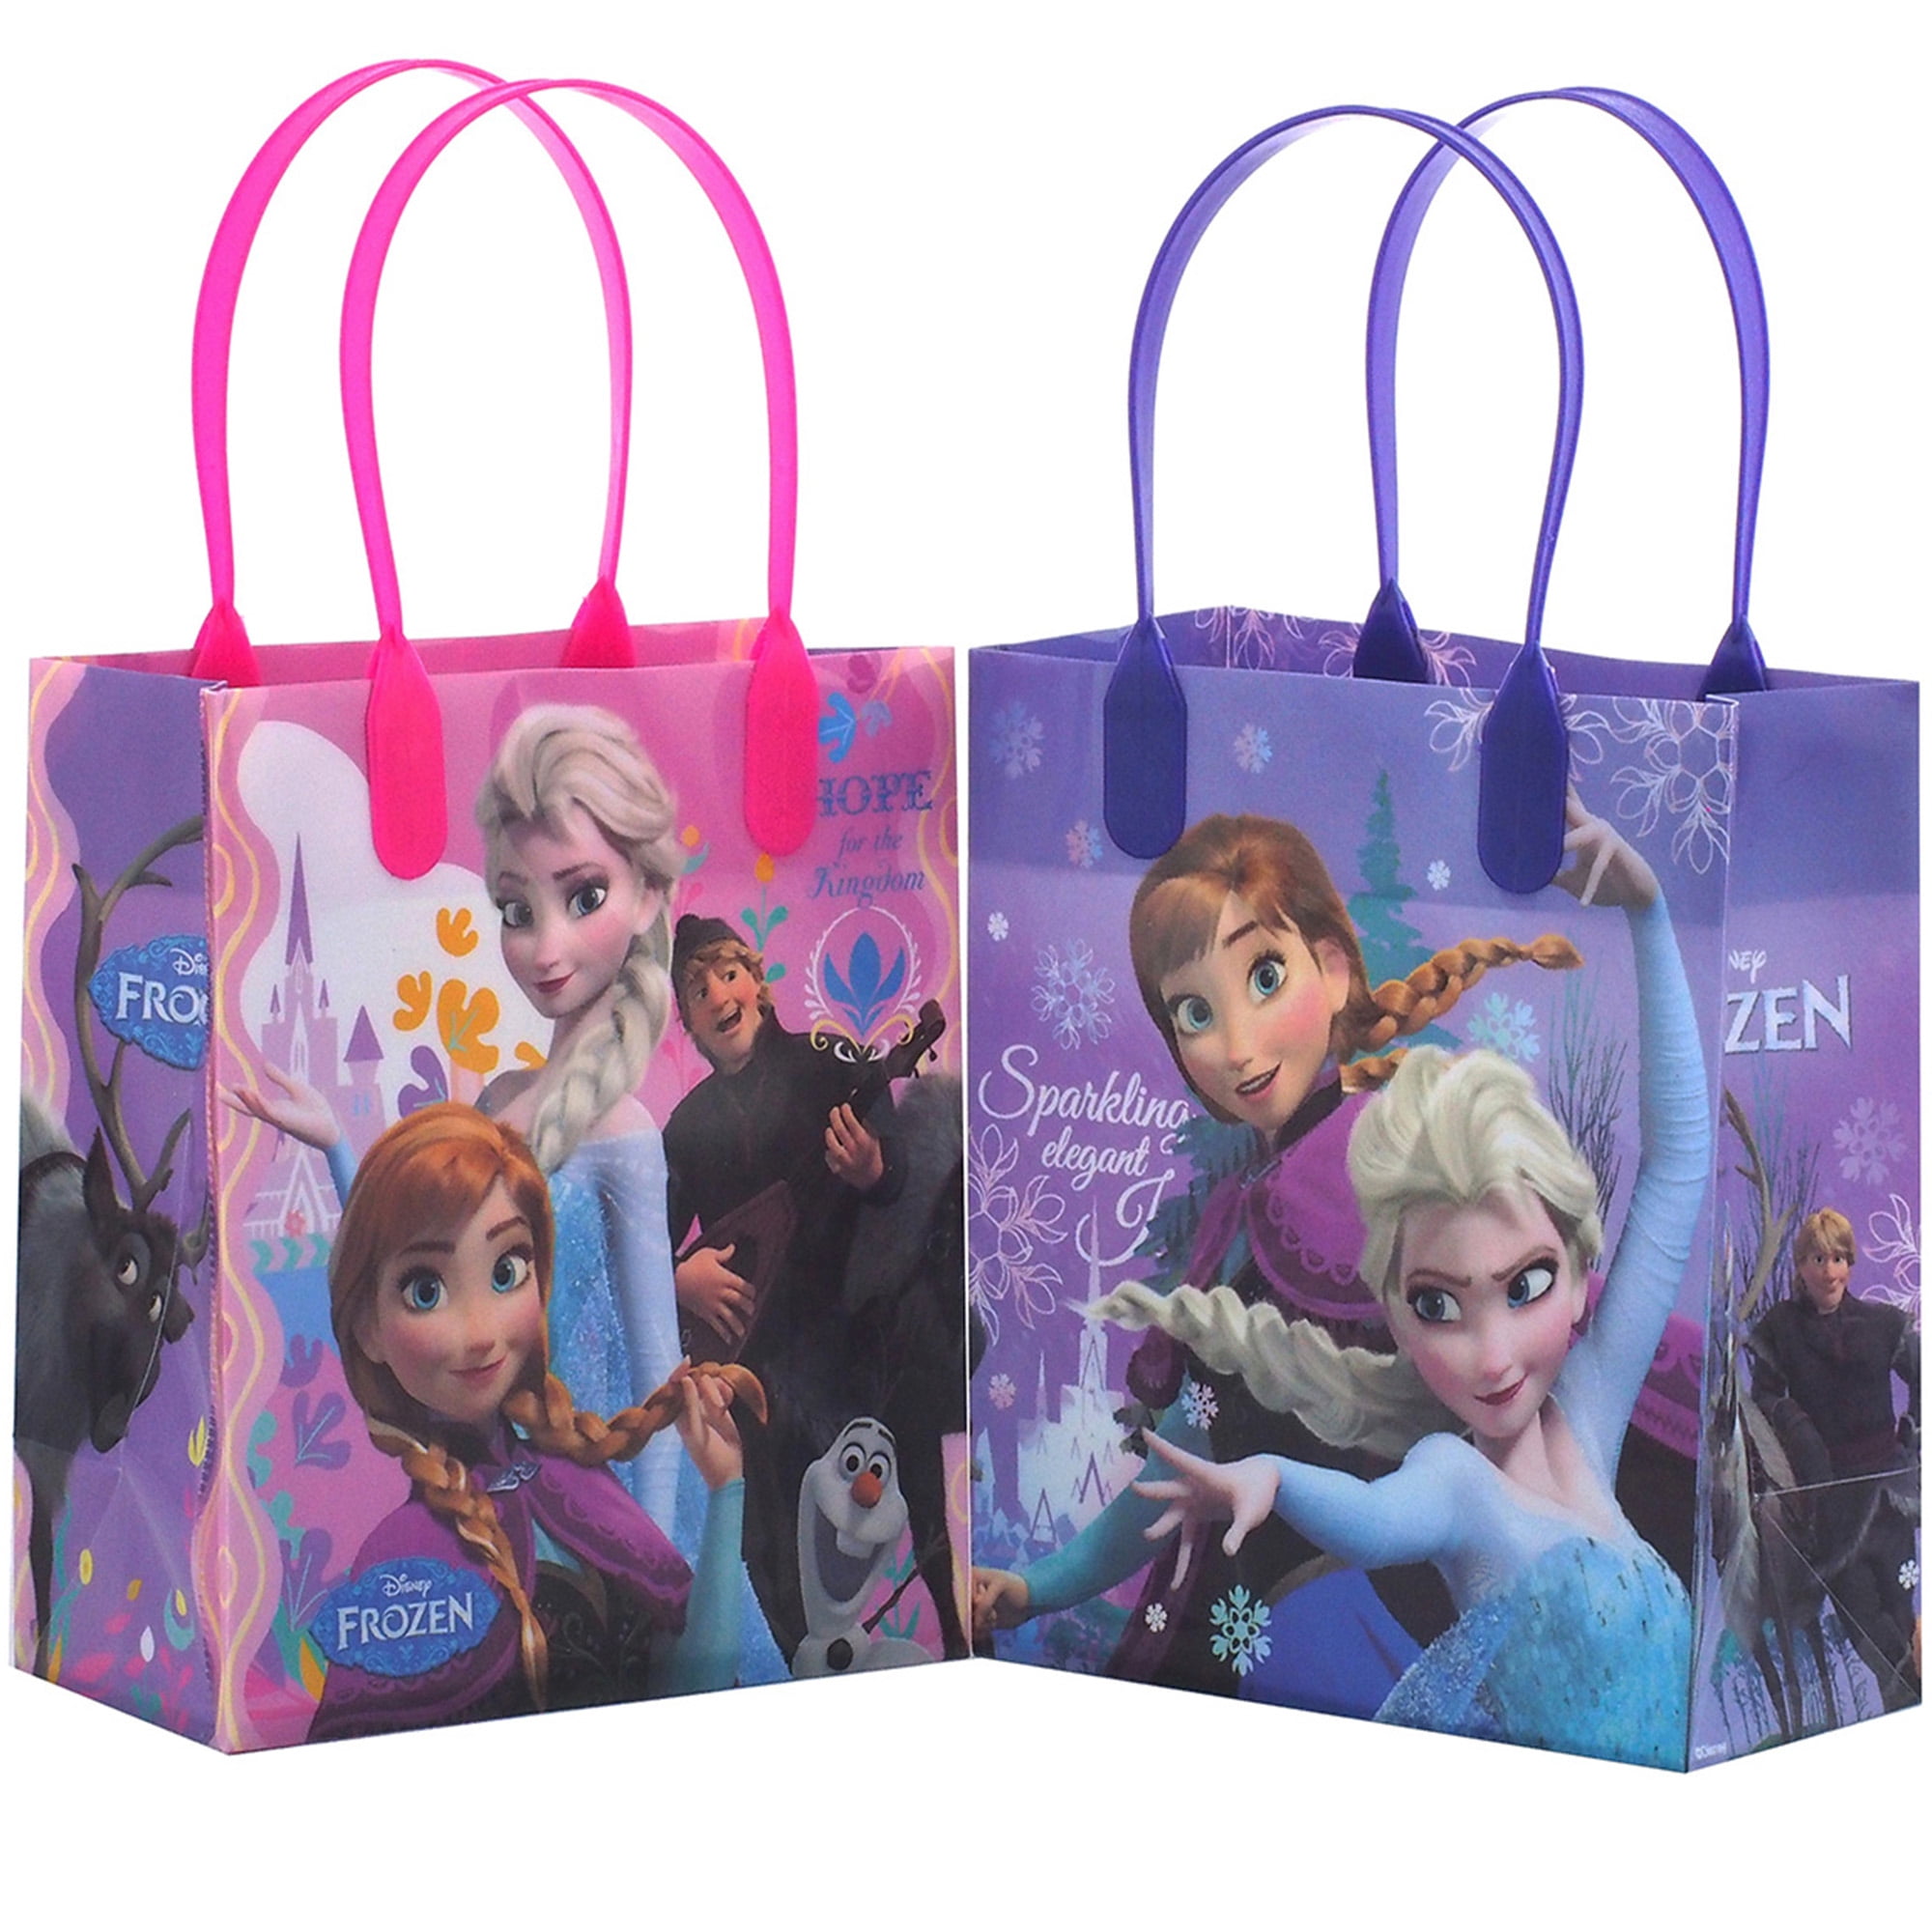 Backpack - Disney - Frozen Snow Elsa ,Anna & Olaf School Bag New 638993 -  Walmart.com